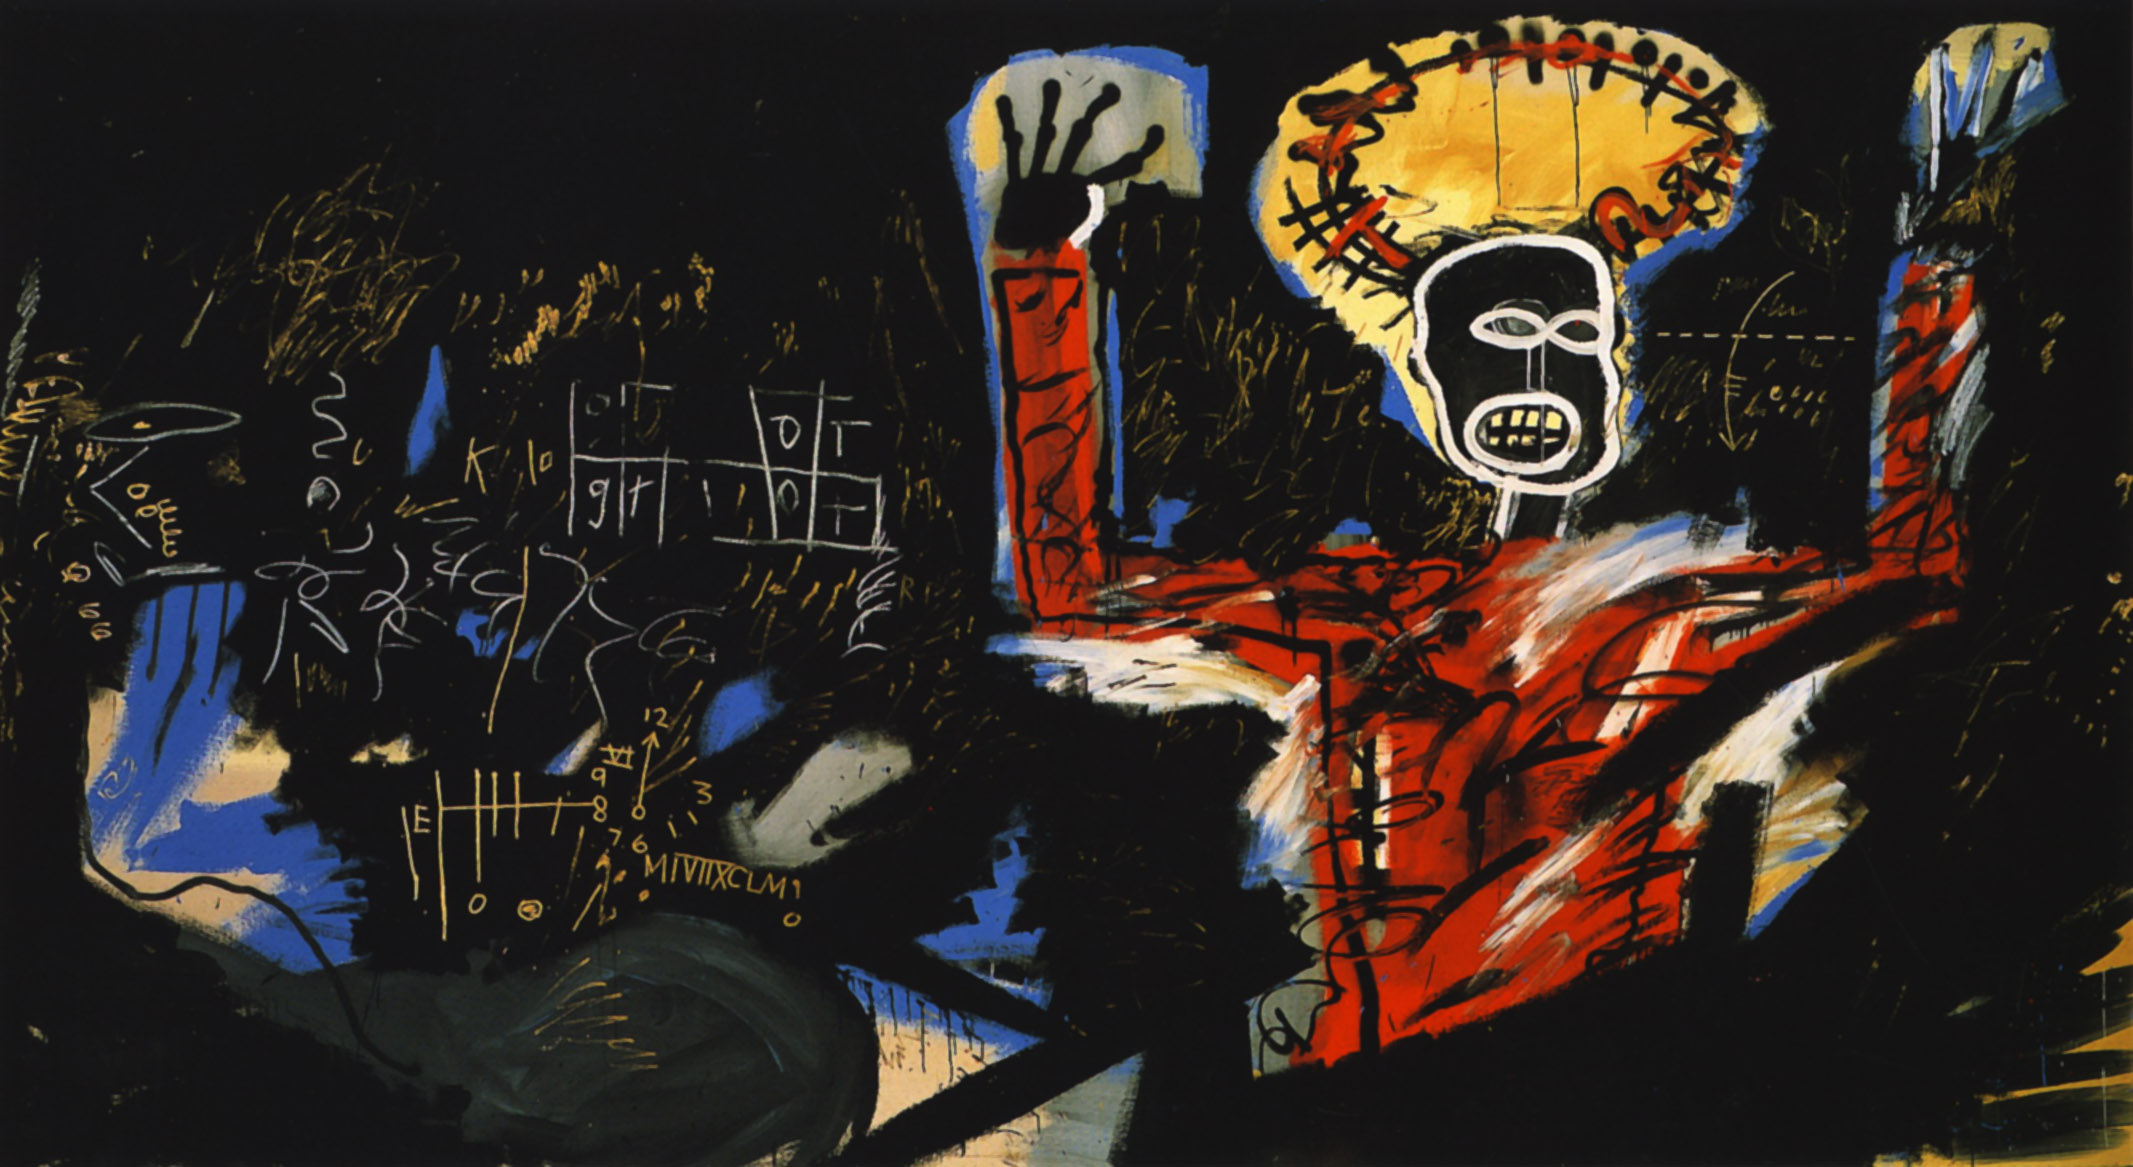 Κέρδος Ι by Ζαν-Μισέ Μπασκιά - 1982 - 220 x 400 εκ. 